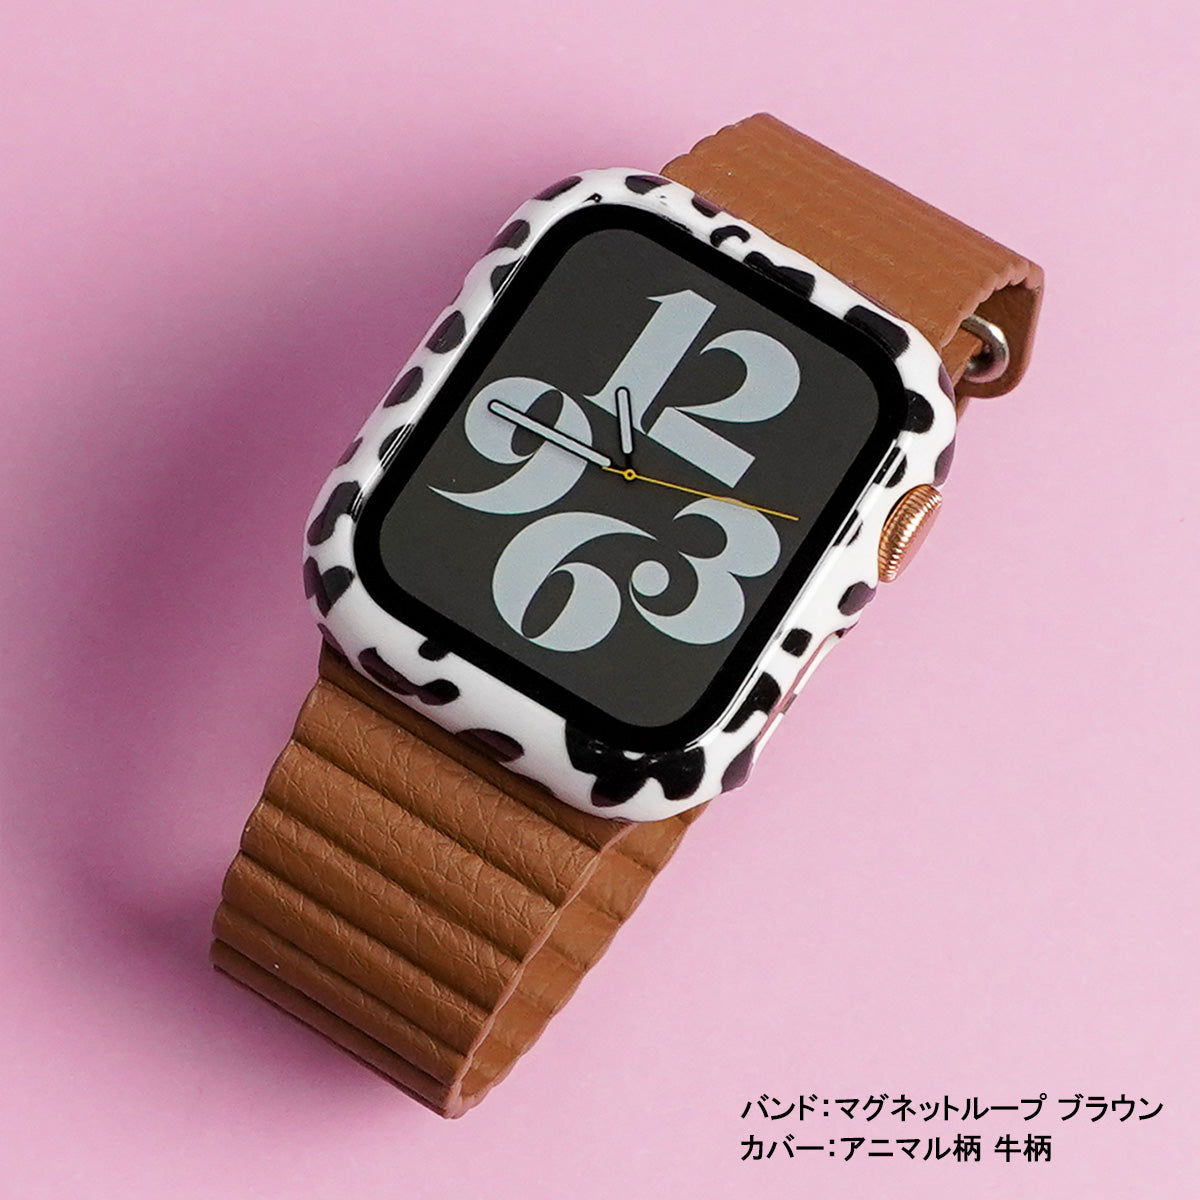 激安特価品アップルウォッチ Apple Watch バンド ベルト＋カバー